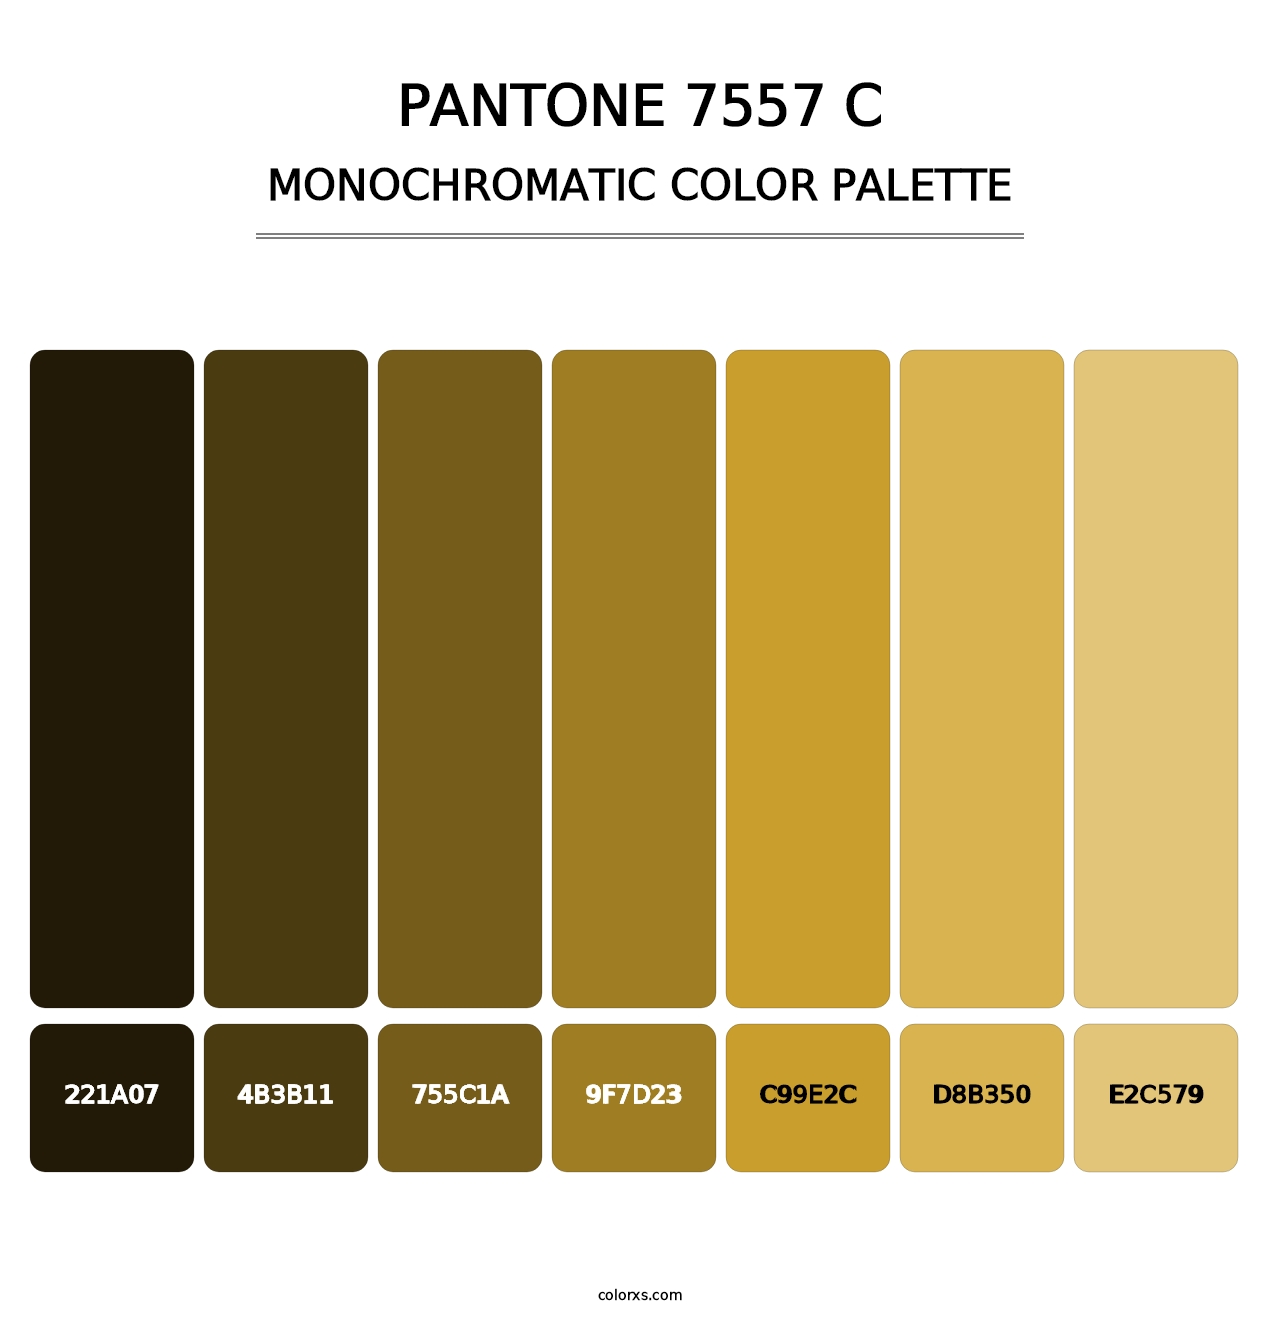 PANTONE 7557 C - Monochromatic Color Palette